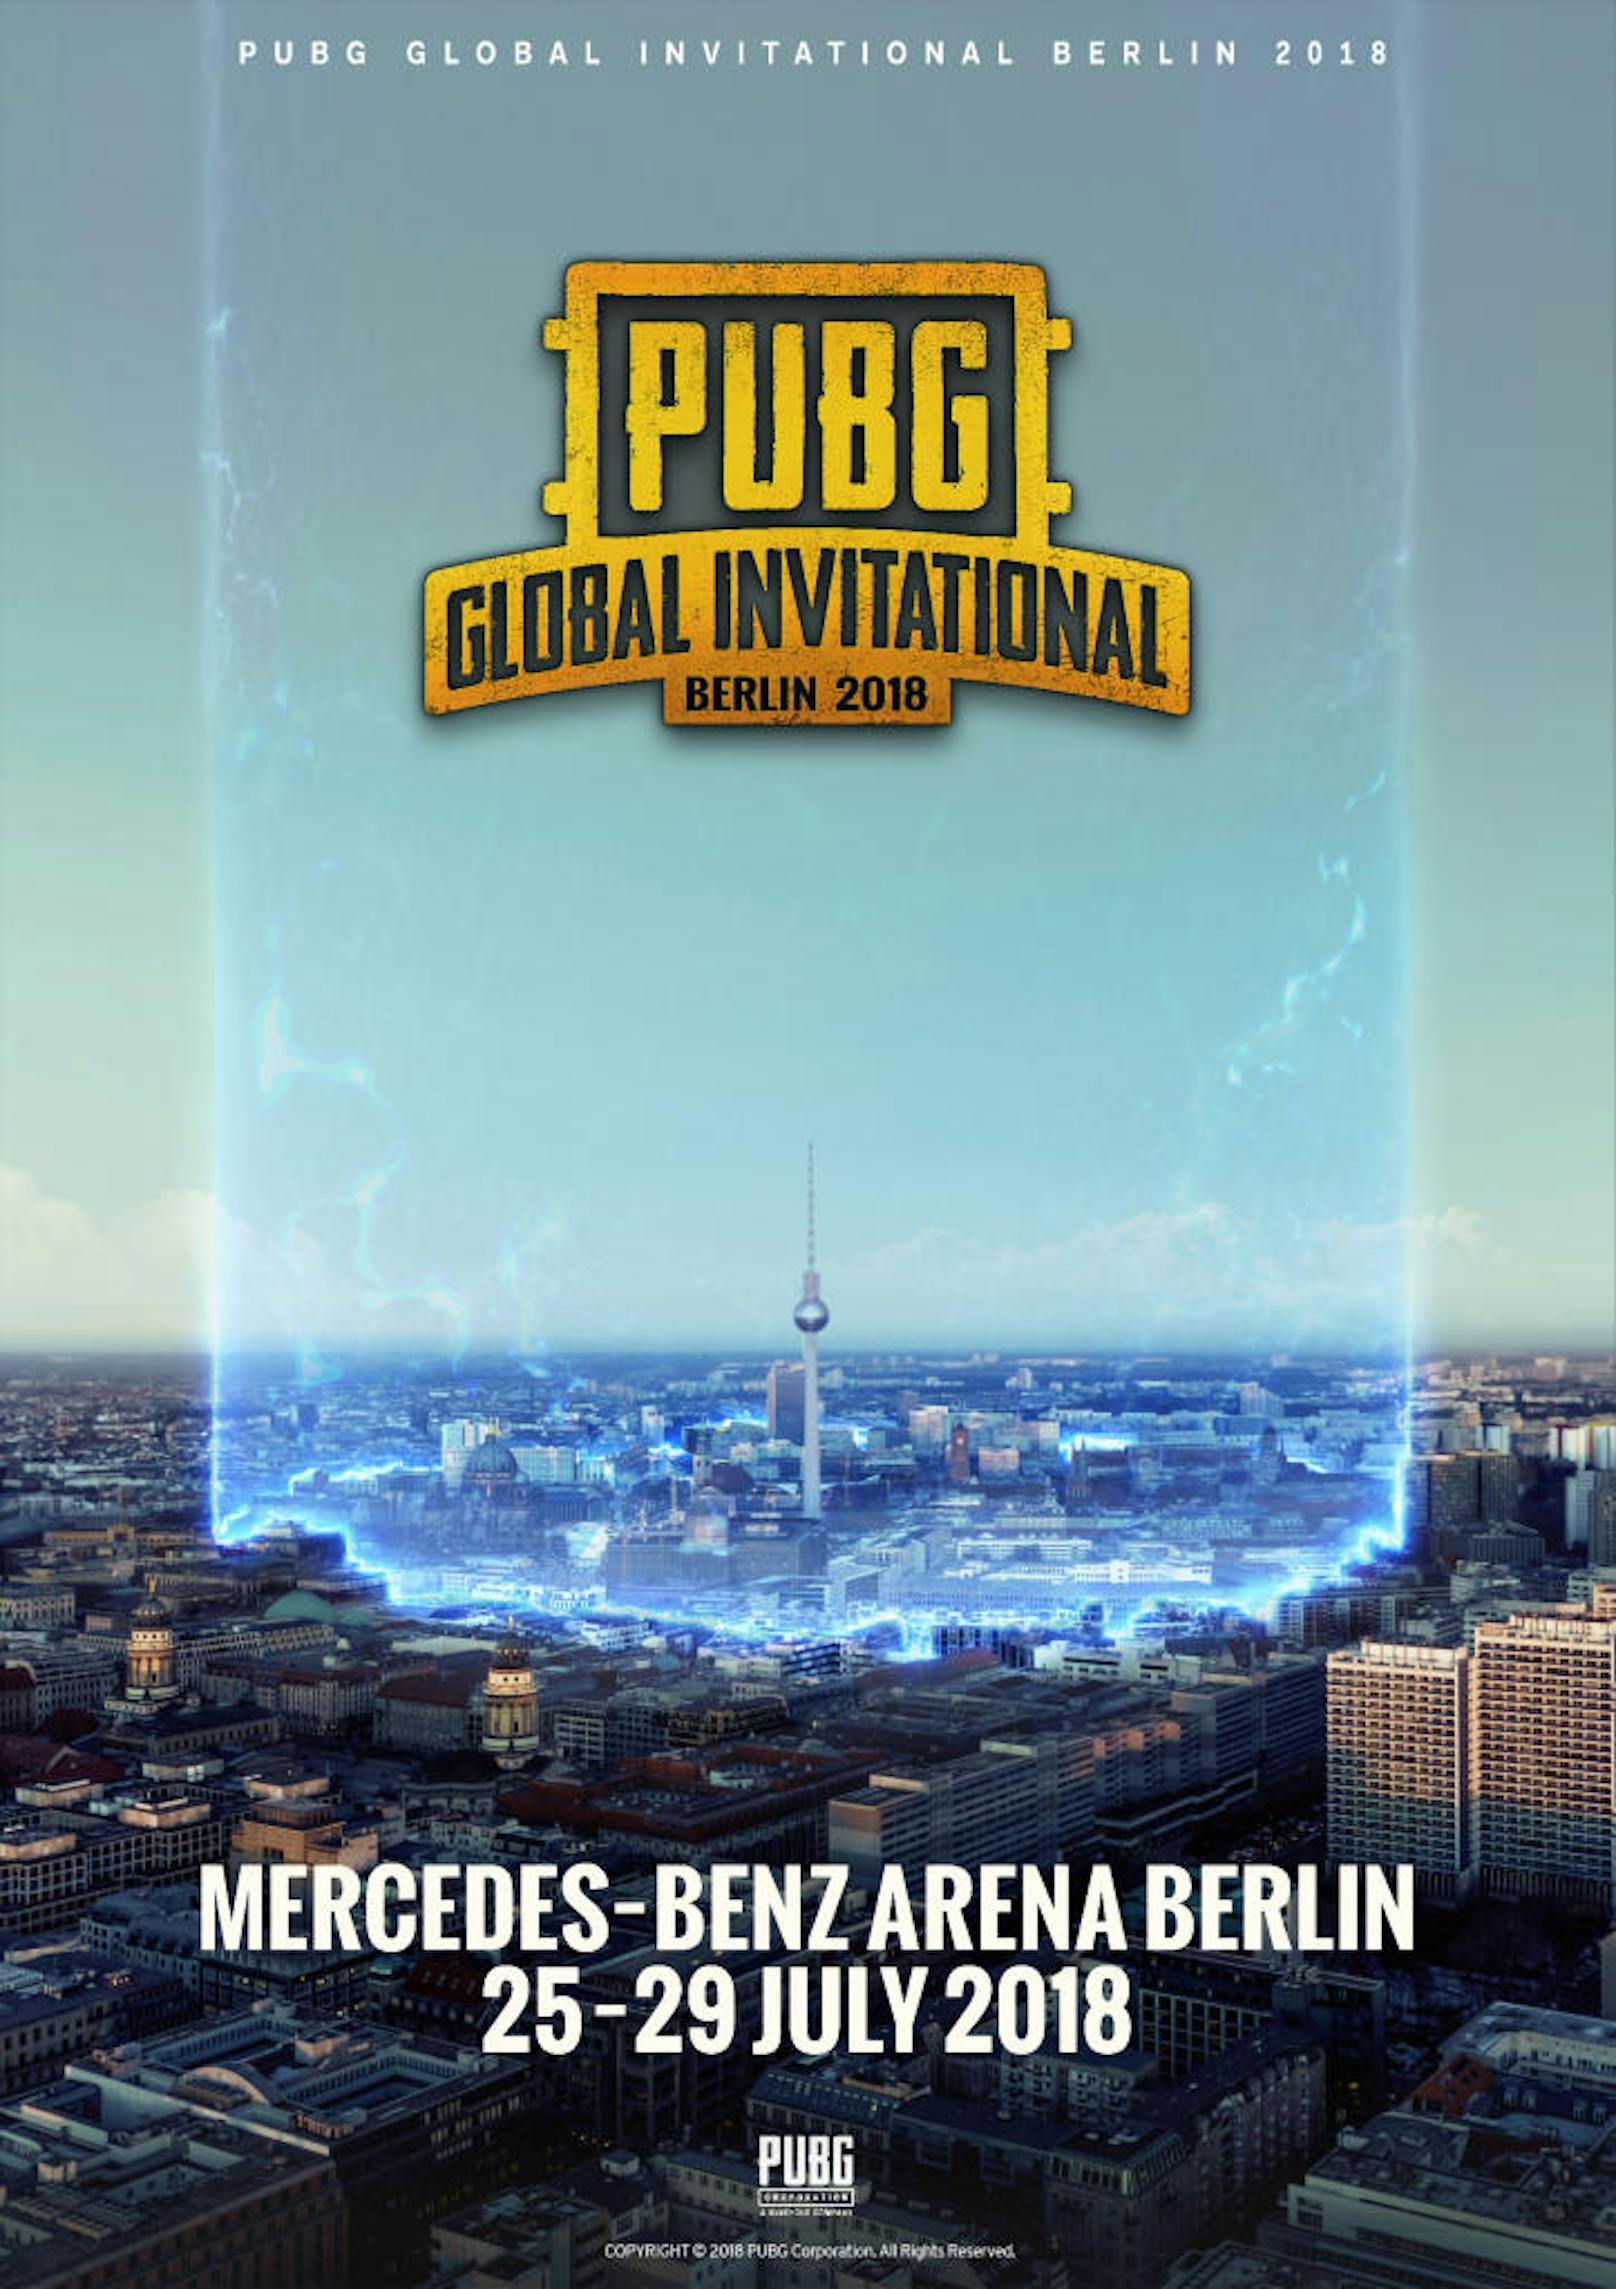 Vom 25. bis 29. Juli 2018 findet in der Mercedes-Benz Arena in Berlin das PUBG GLOBAL INVITATIONAL 2018 (PGI 2018) statt. Bei PGI 2018 handelt es sich um das erste, weltweite und offiziell von PUBG Corp. veranstaltete eSports-Turnier, in dem die 20 besten Playerunknown's Battleground-Teams aus aller Welt um ein Preisgeld von insgesamt 2 Millionen US-Dollar gegeneinander antreten. Tickets für das PGI 2018 sind ab sofort unter pgi.playbattlegrounds.com/tickets verfügbar.